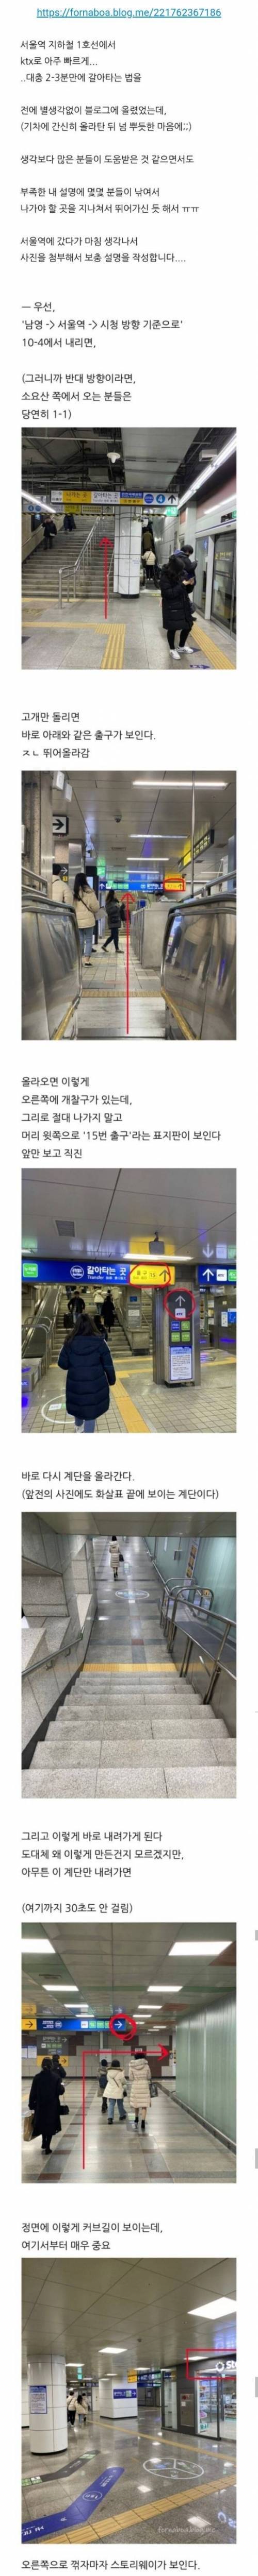 [스압] 1호선 서울역에서 KTX 환승 2분컷 쌉가능한 방법.jpg